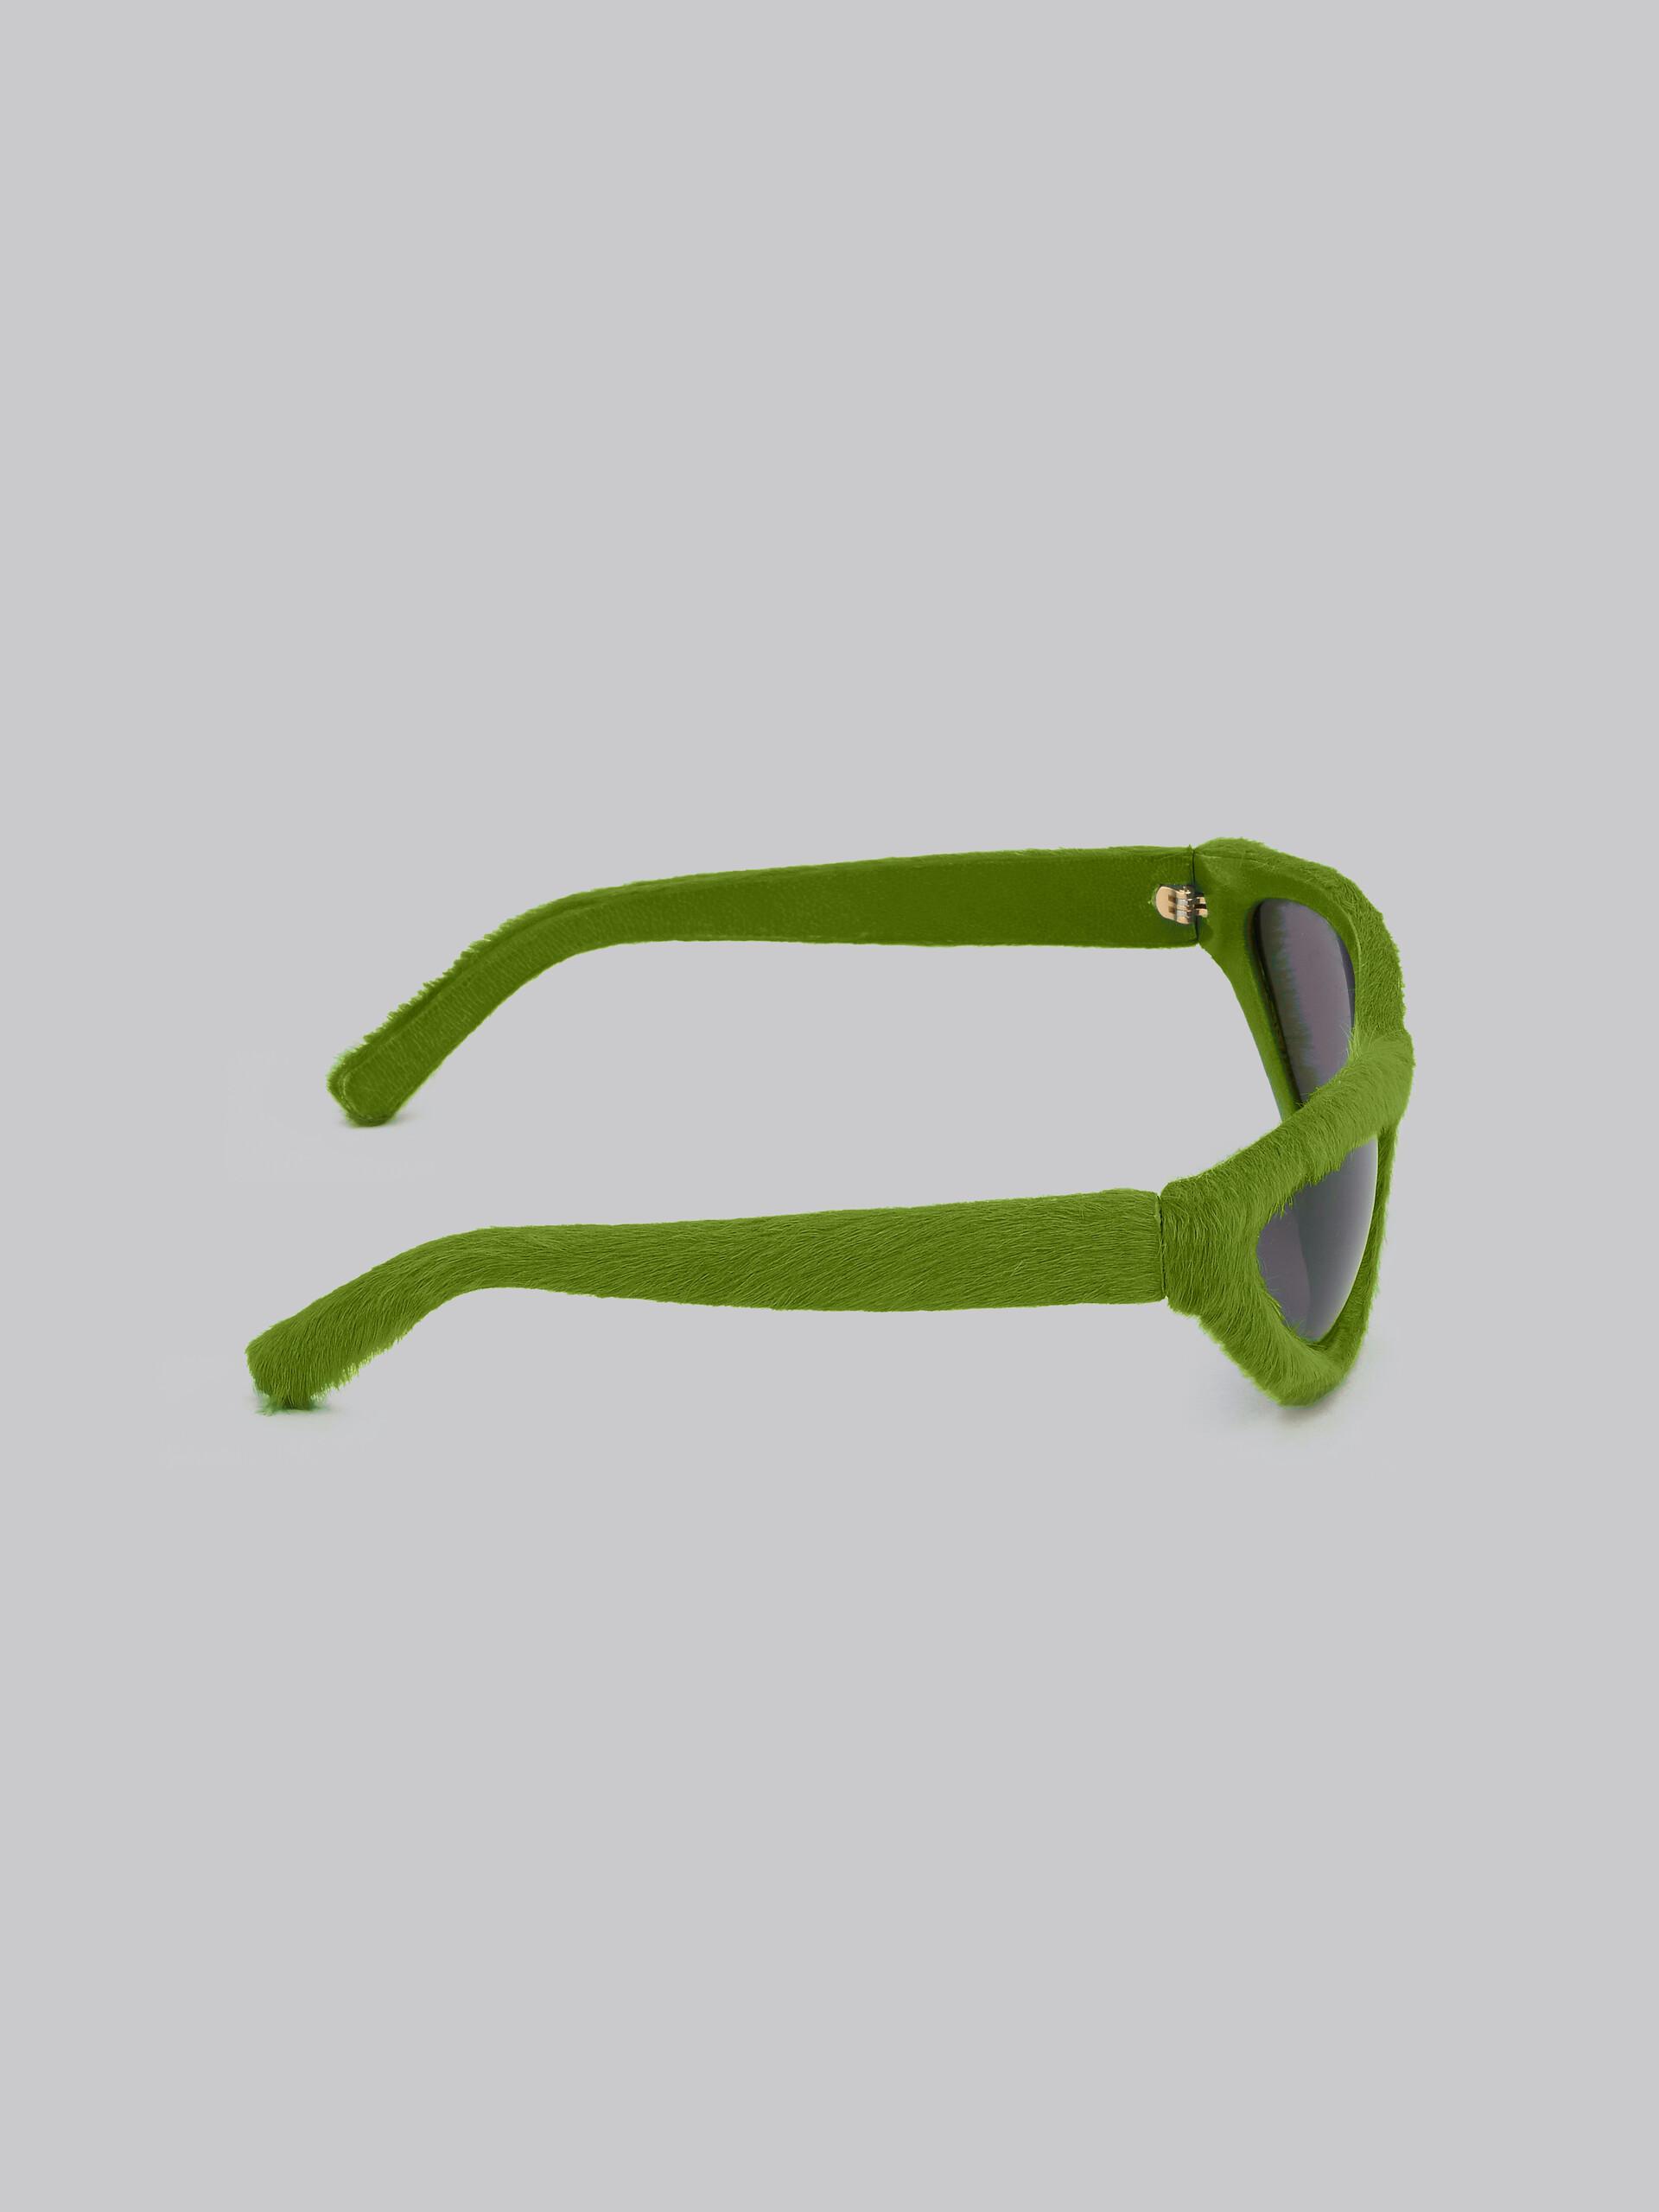 Sonnenbrille Mavericks in Fellgrün - Optisch - Image 4